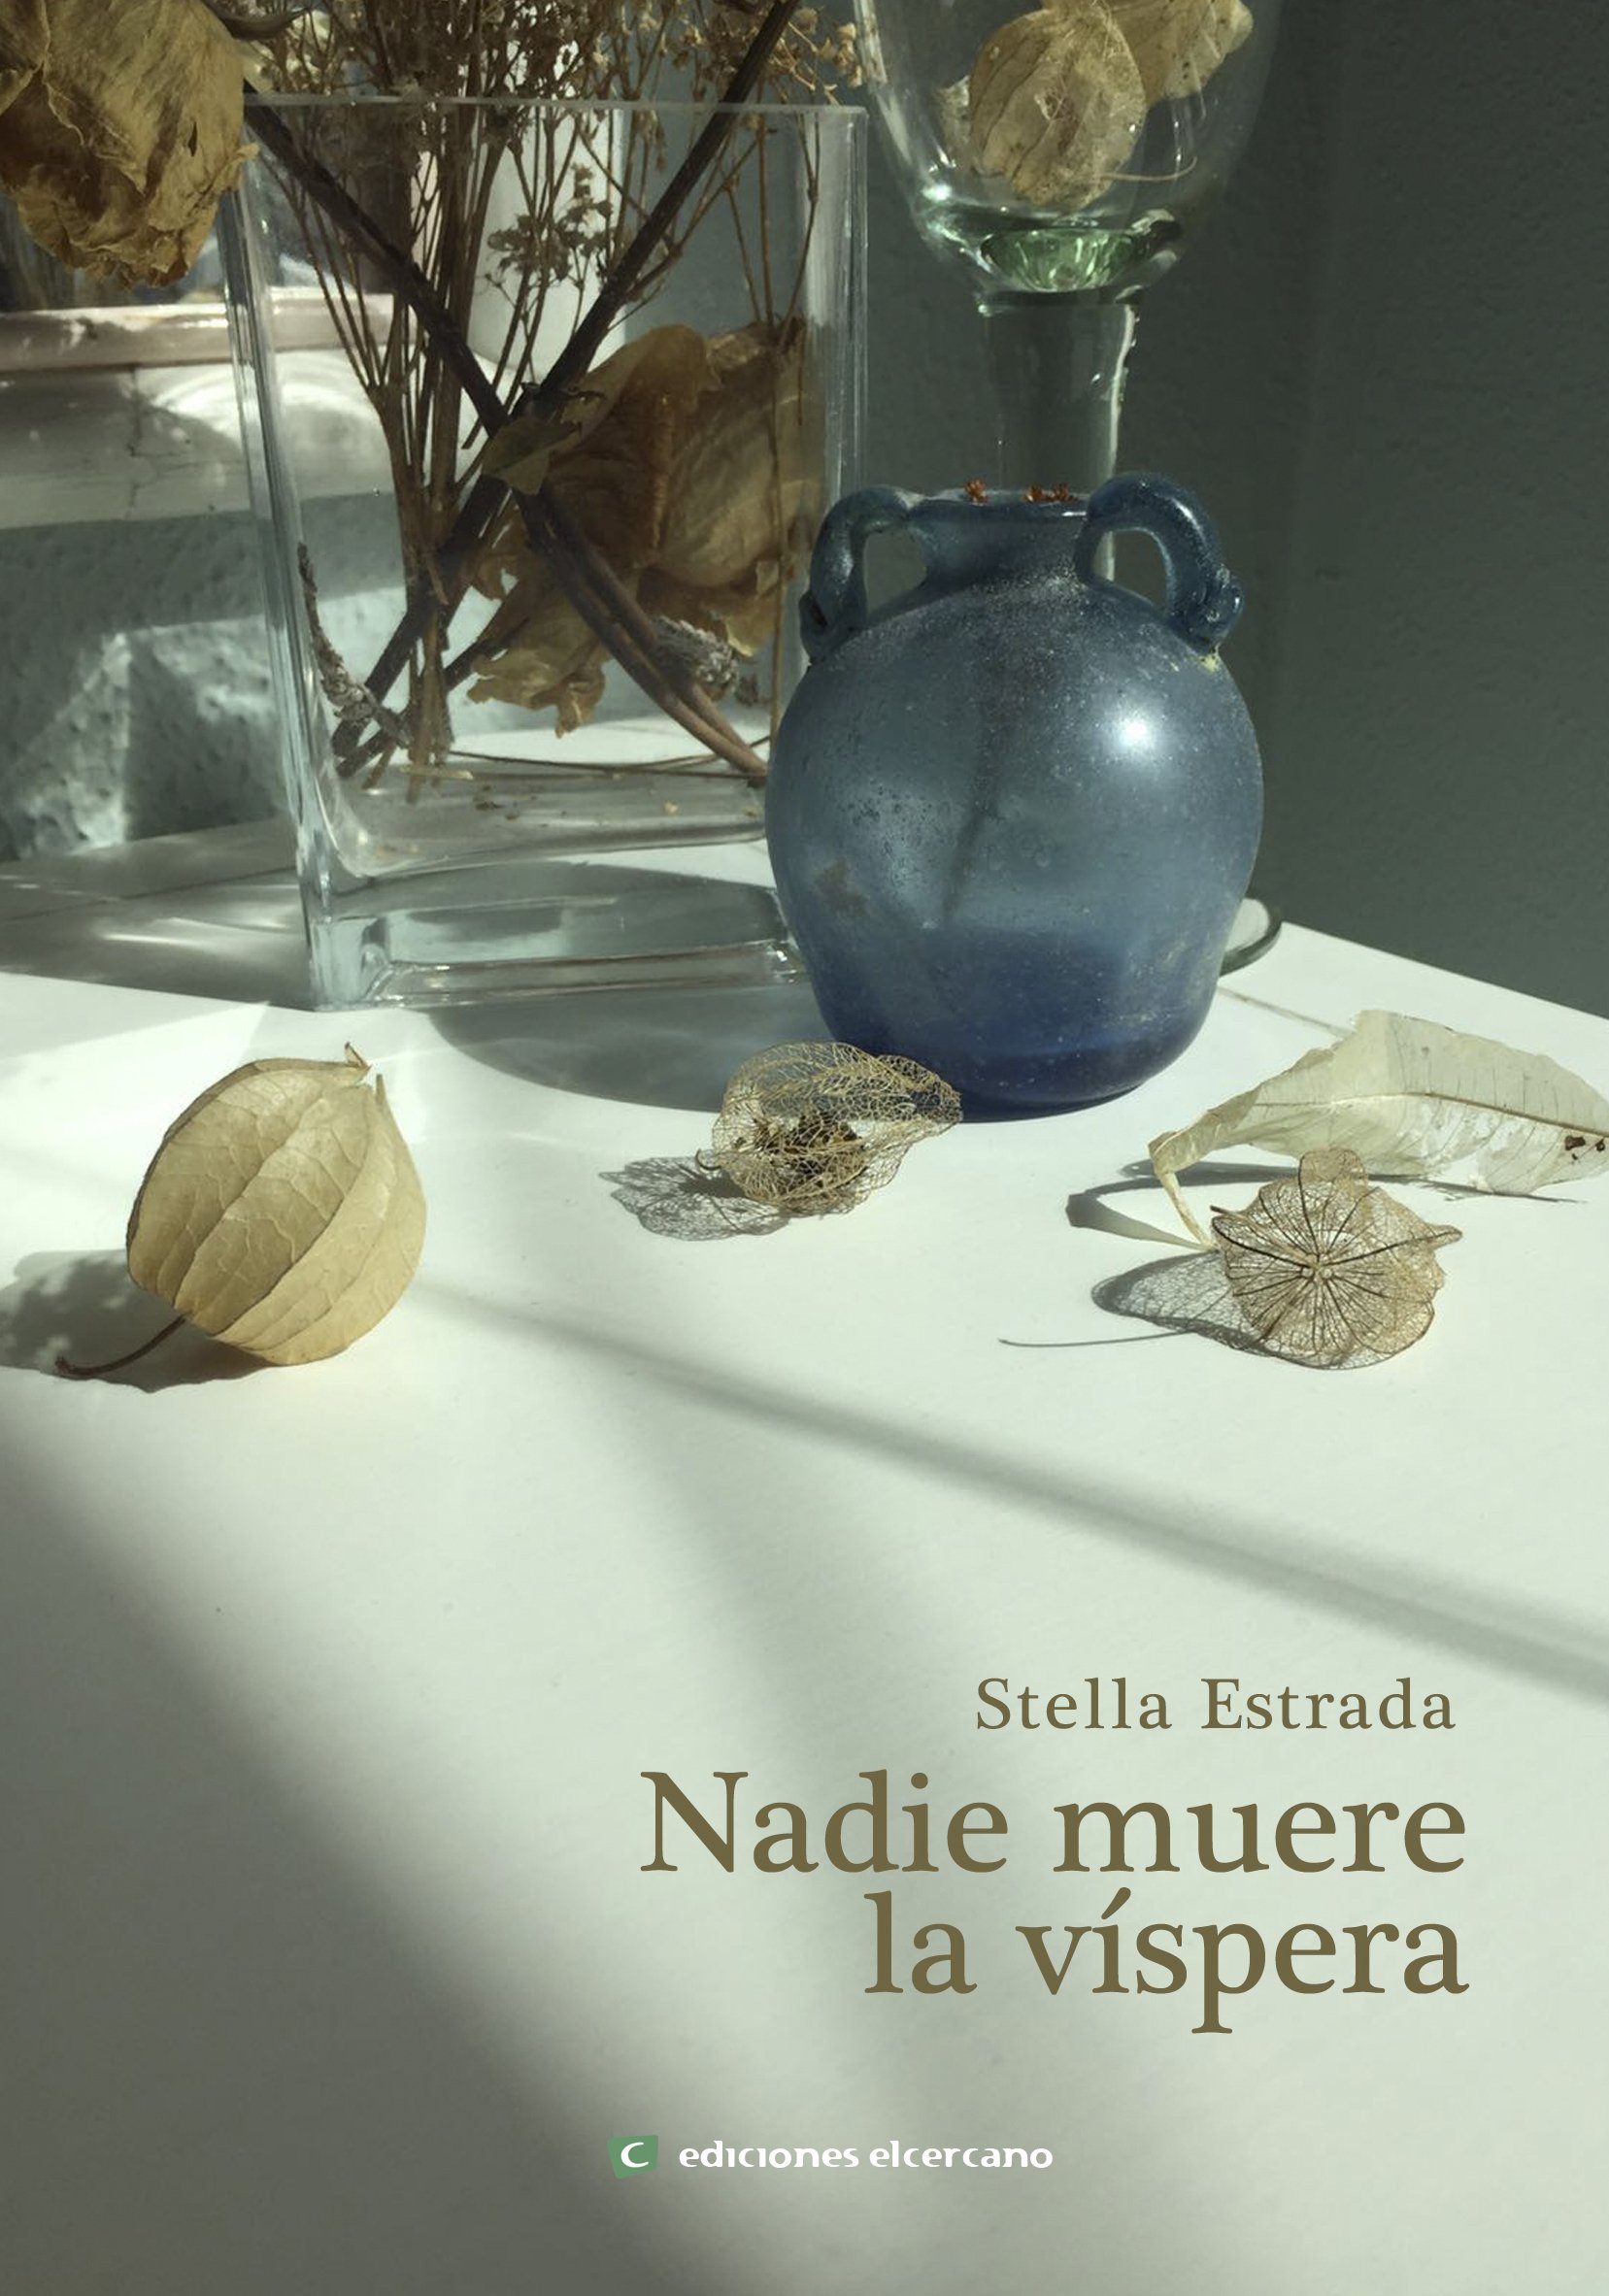 Presentación novela Stella Estrada